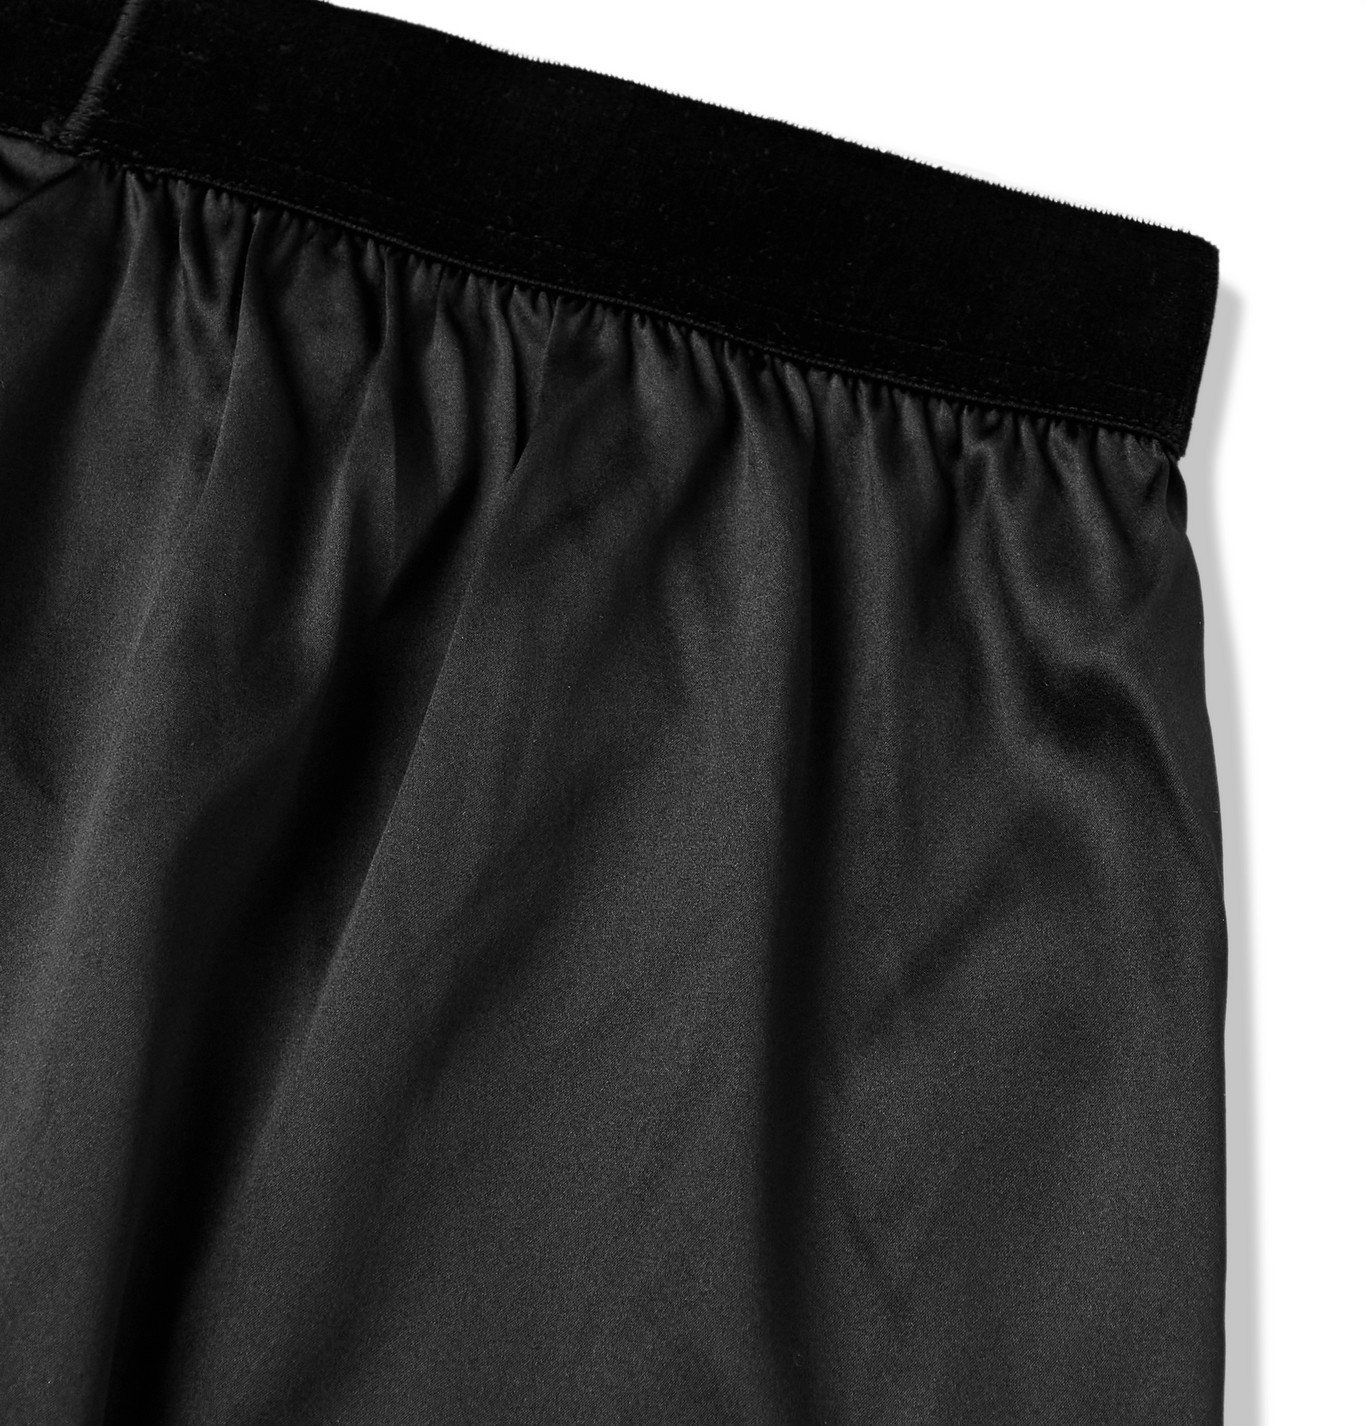 TOM FORD - Velvet-Trimmed Stretch-Silk Satin Boxer Shorts - Black TOM FORD